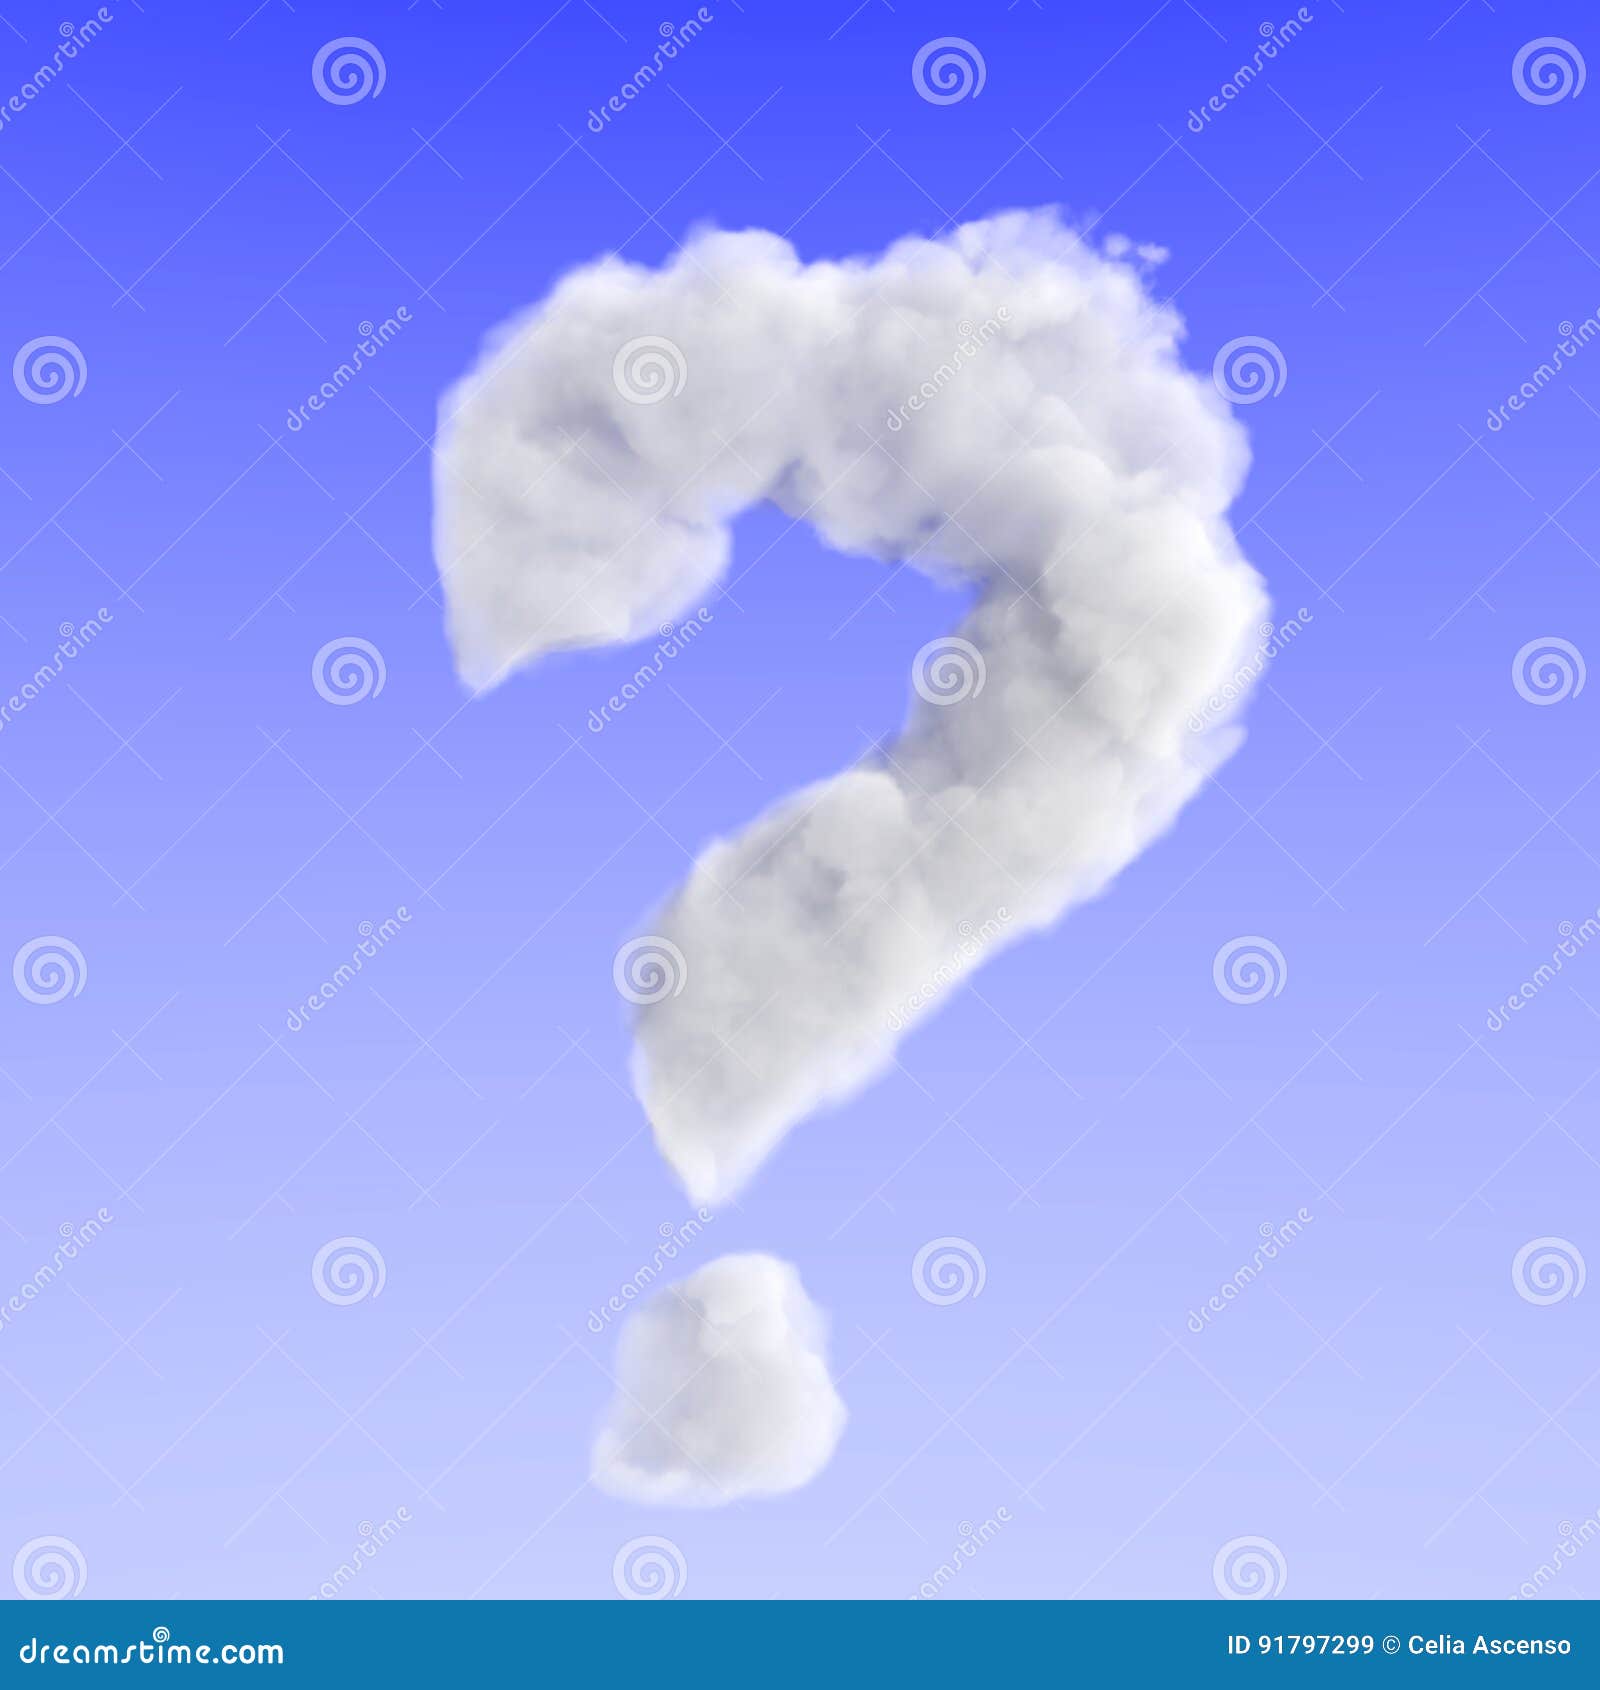 cloud doubt question mark enigma